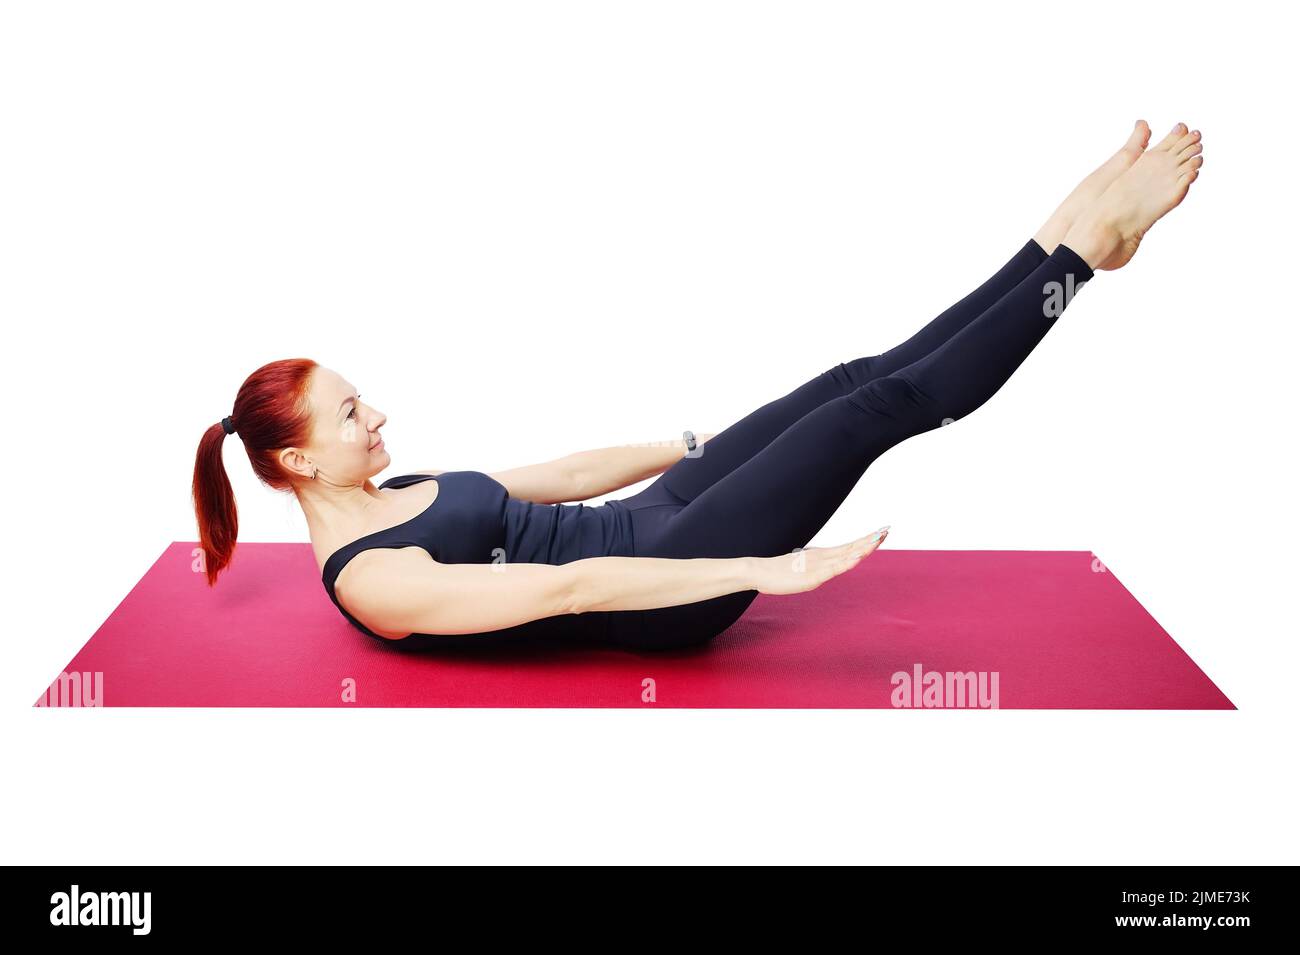 Esta es una mujer delgada de mediana edad acostada en una colchoneta de gimnasio con las piernas levantadas y estiradas. Foto de stock